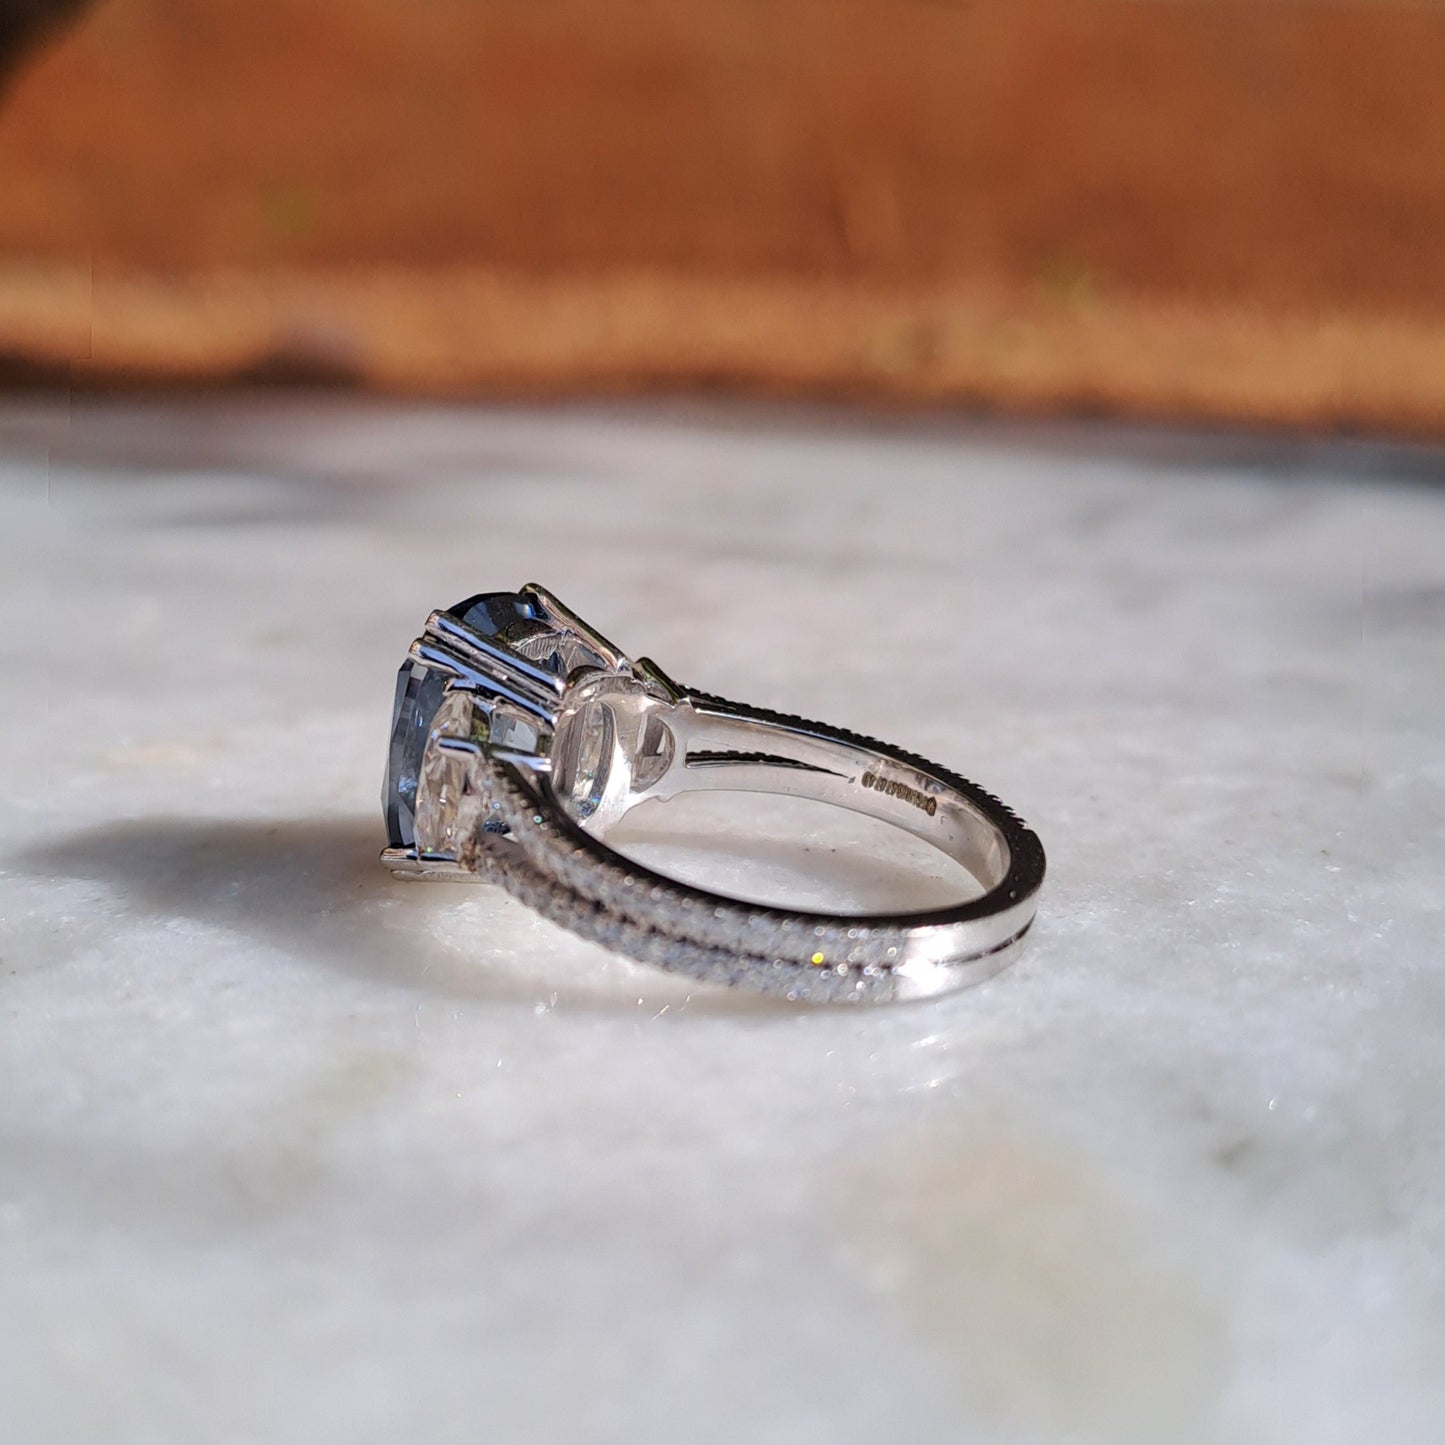 Blue Moissanite Diamond Ring